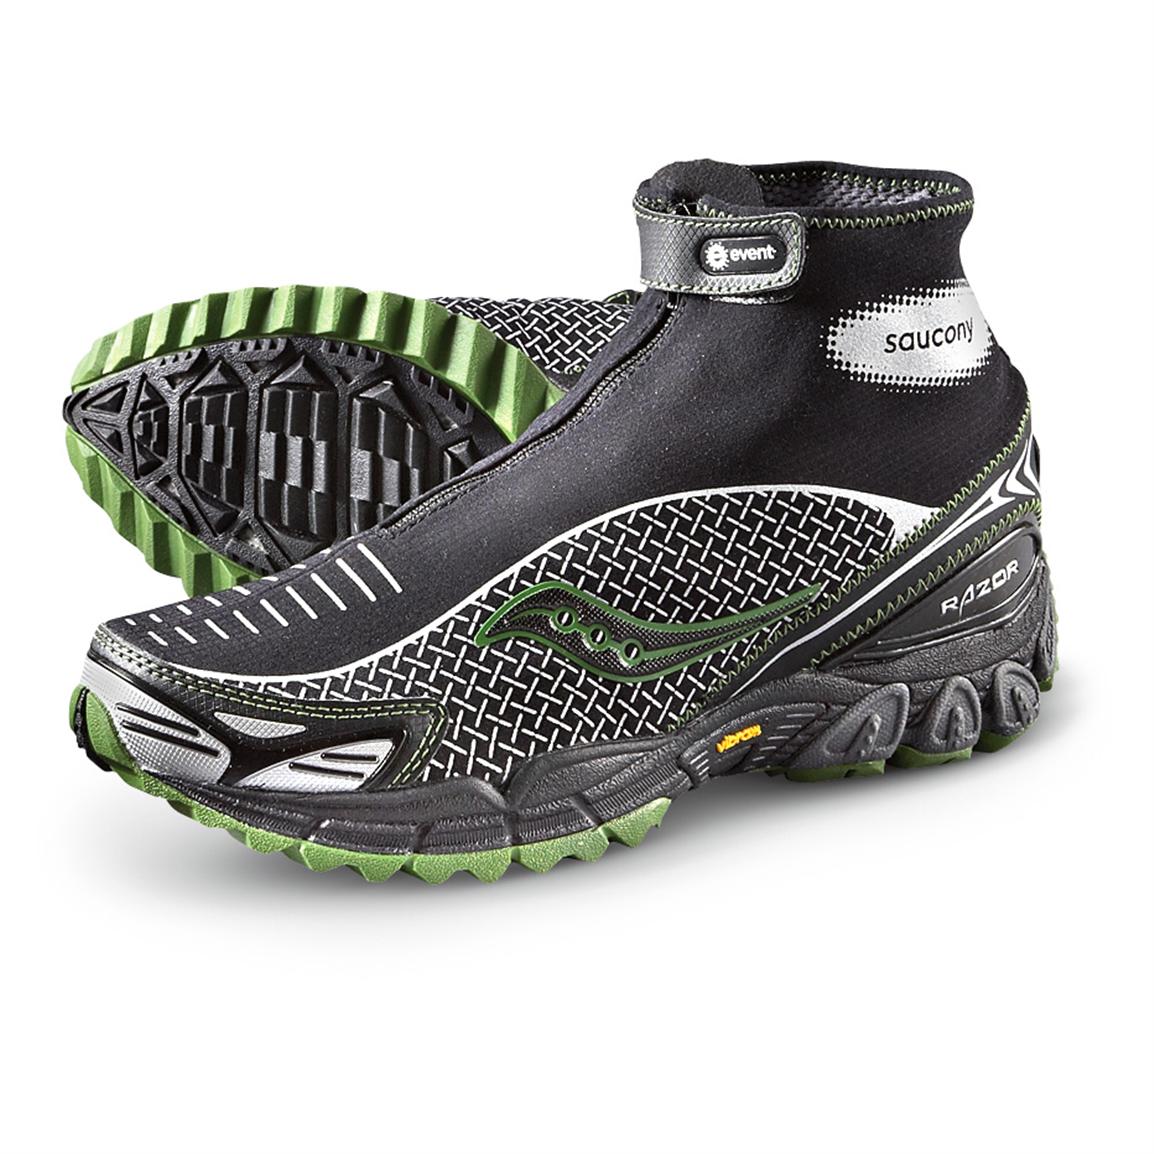 saucony women's waterproof running shoes